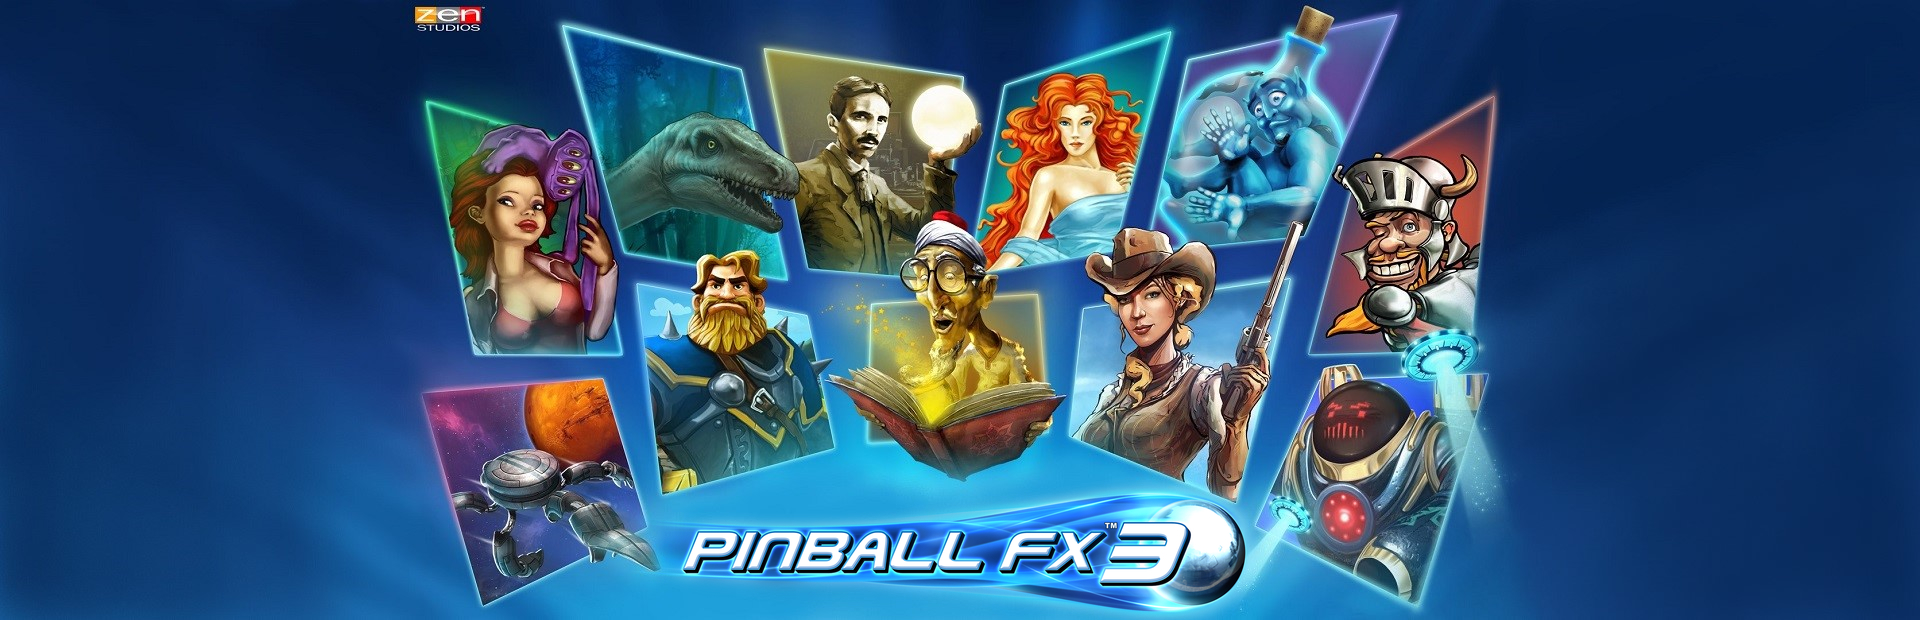 دانلود بازی Pinball FX3 برای پی سی | گیمباتو